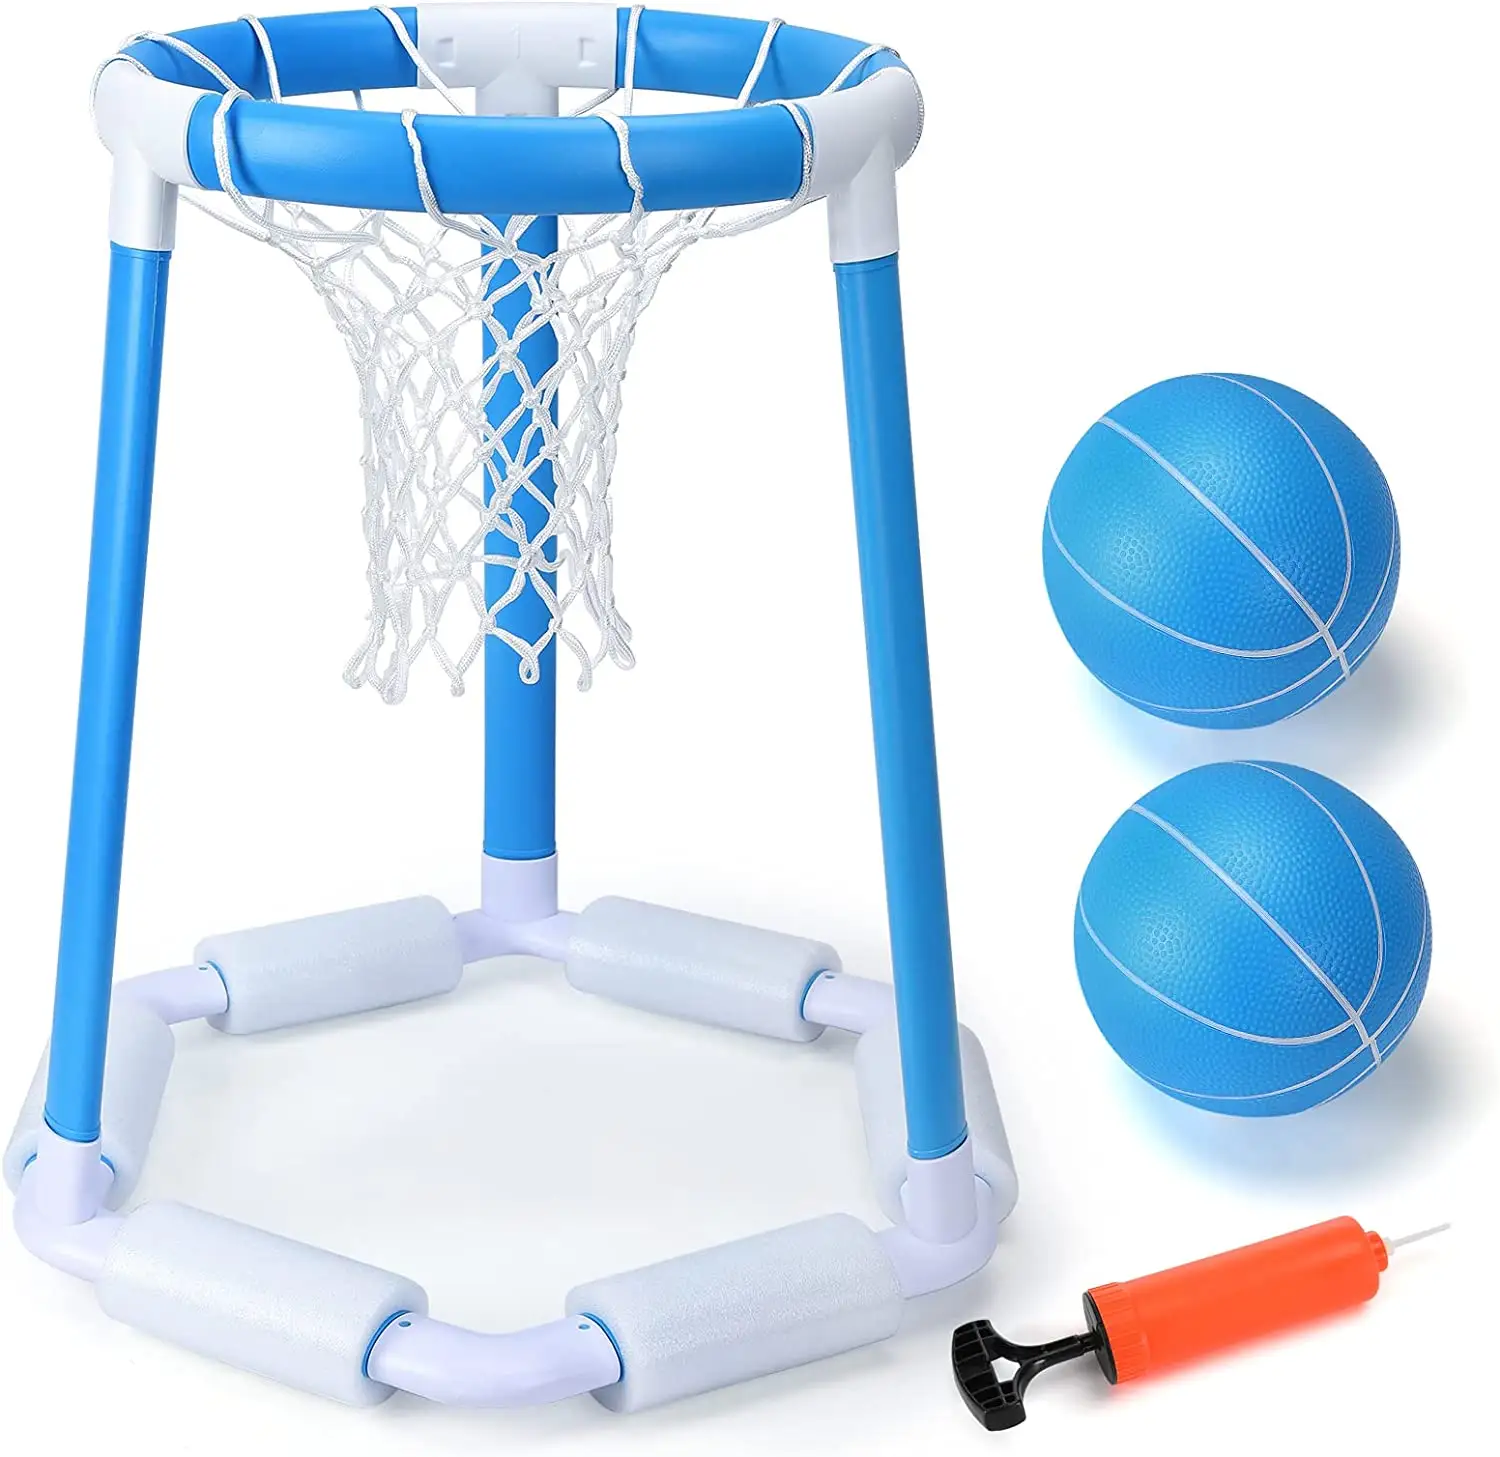 Schwimmender Pool Basketball korb-Schwimmbad Basketball korb Pools ide Set mit 2 Bällen und Pumpe-Aufblasbarer Wasser basketball H.